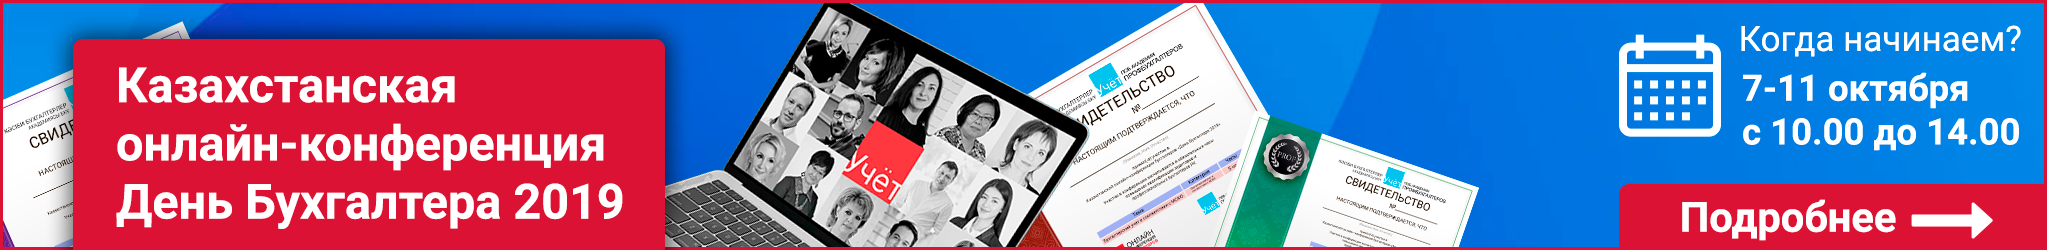 Казахстанская онлайн-конференция День Бухгалтера 2019